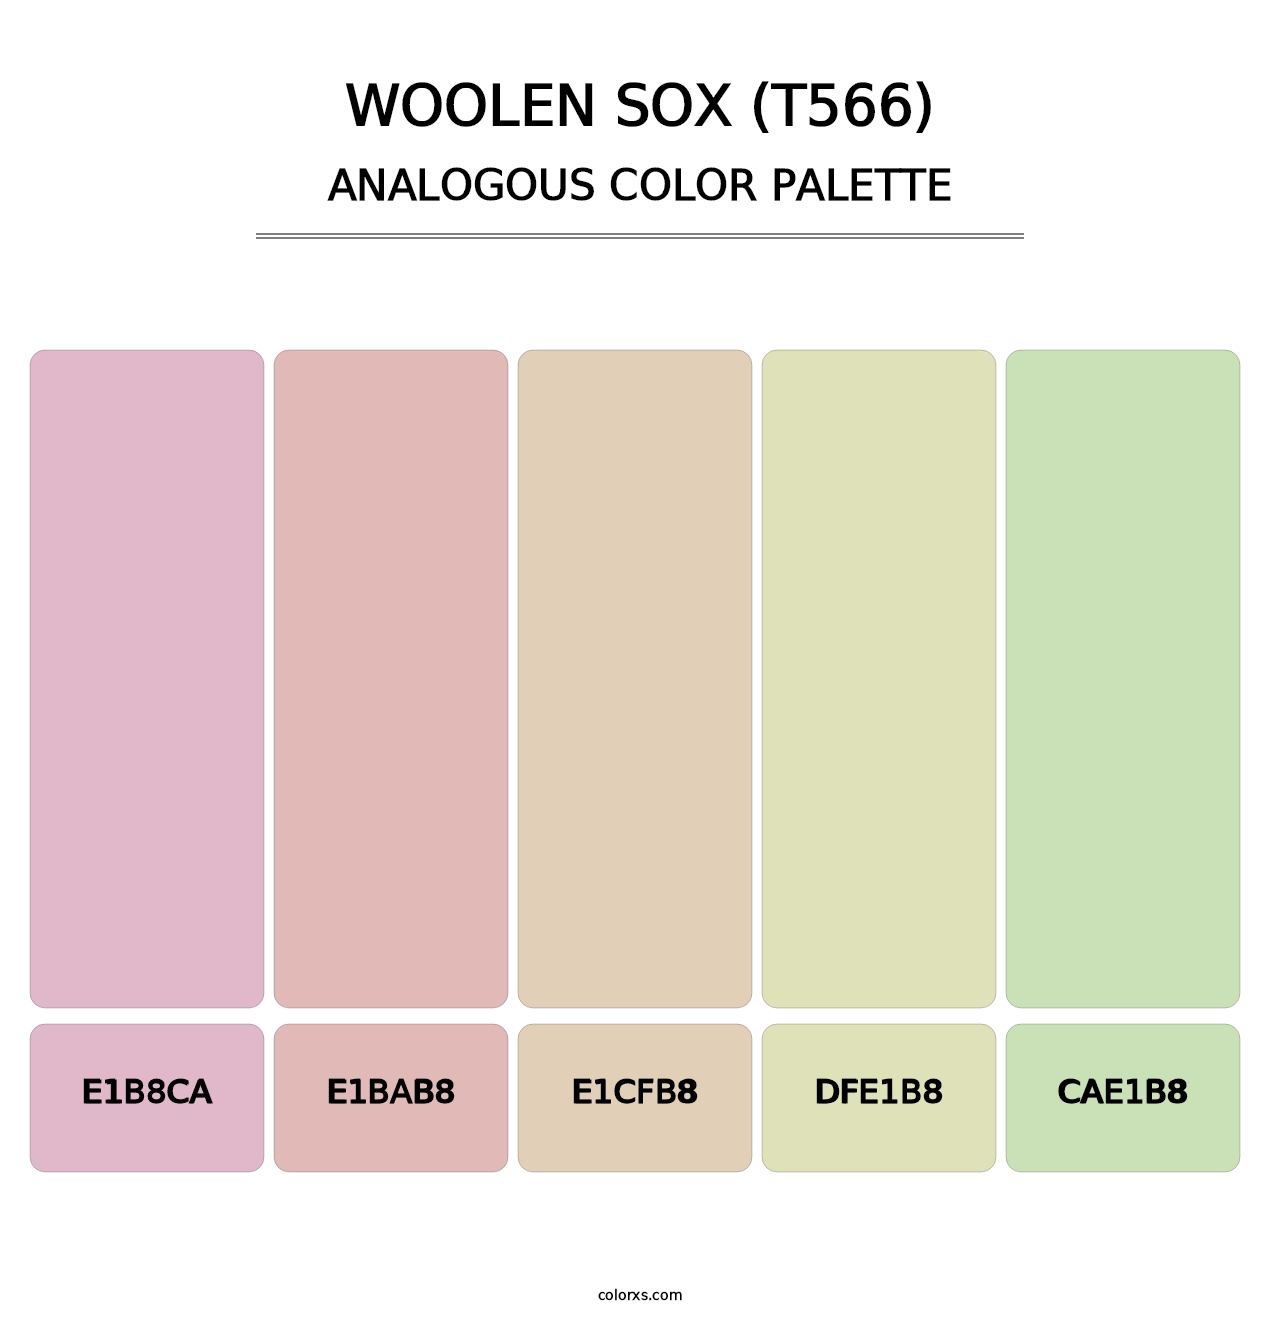 Woolen Sox (T566) - Analogous Color Palette